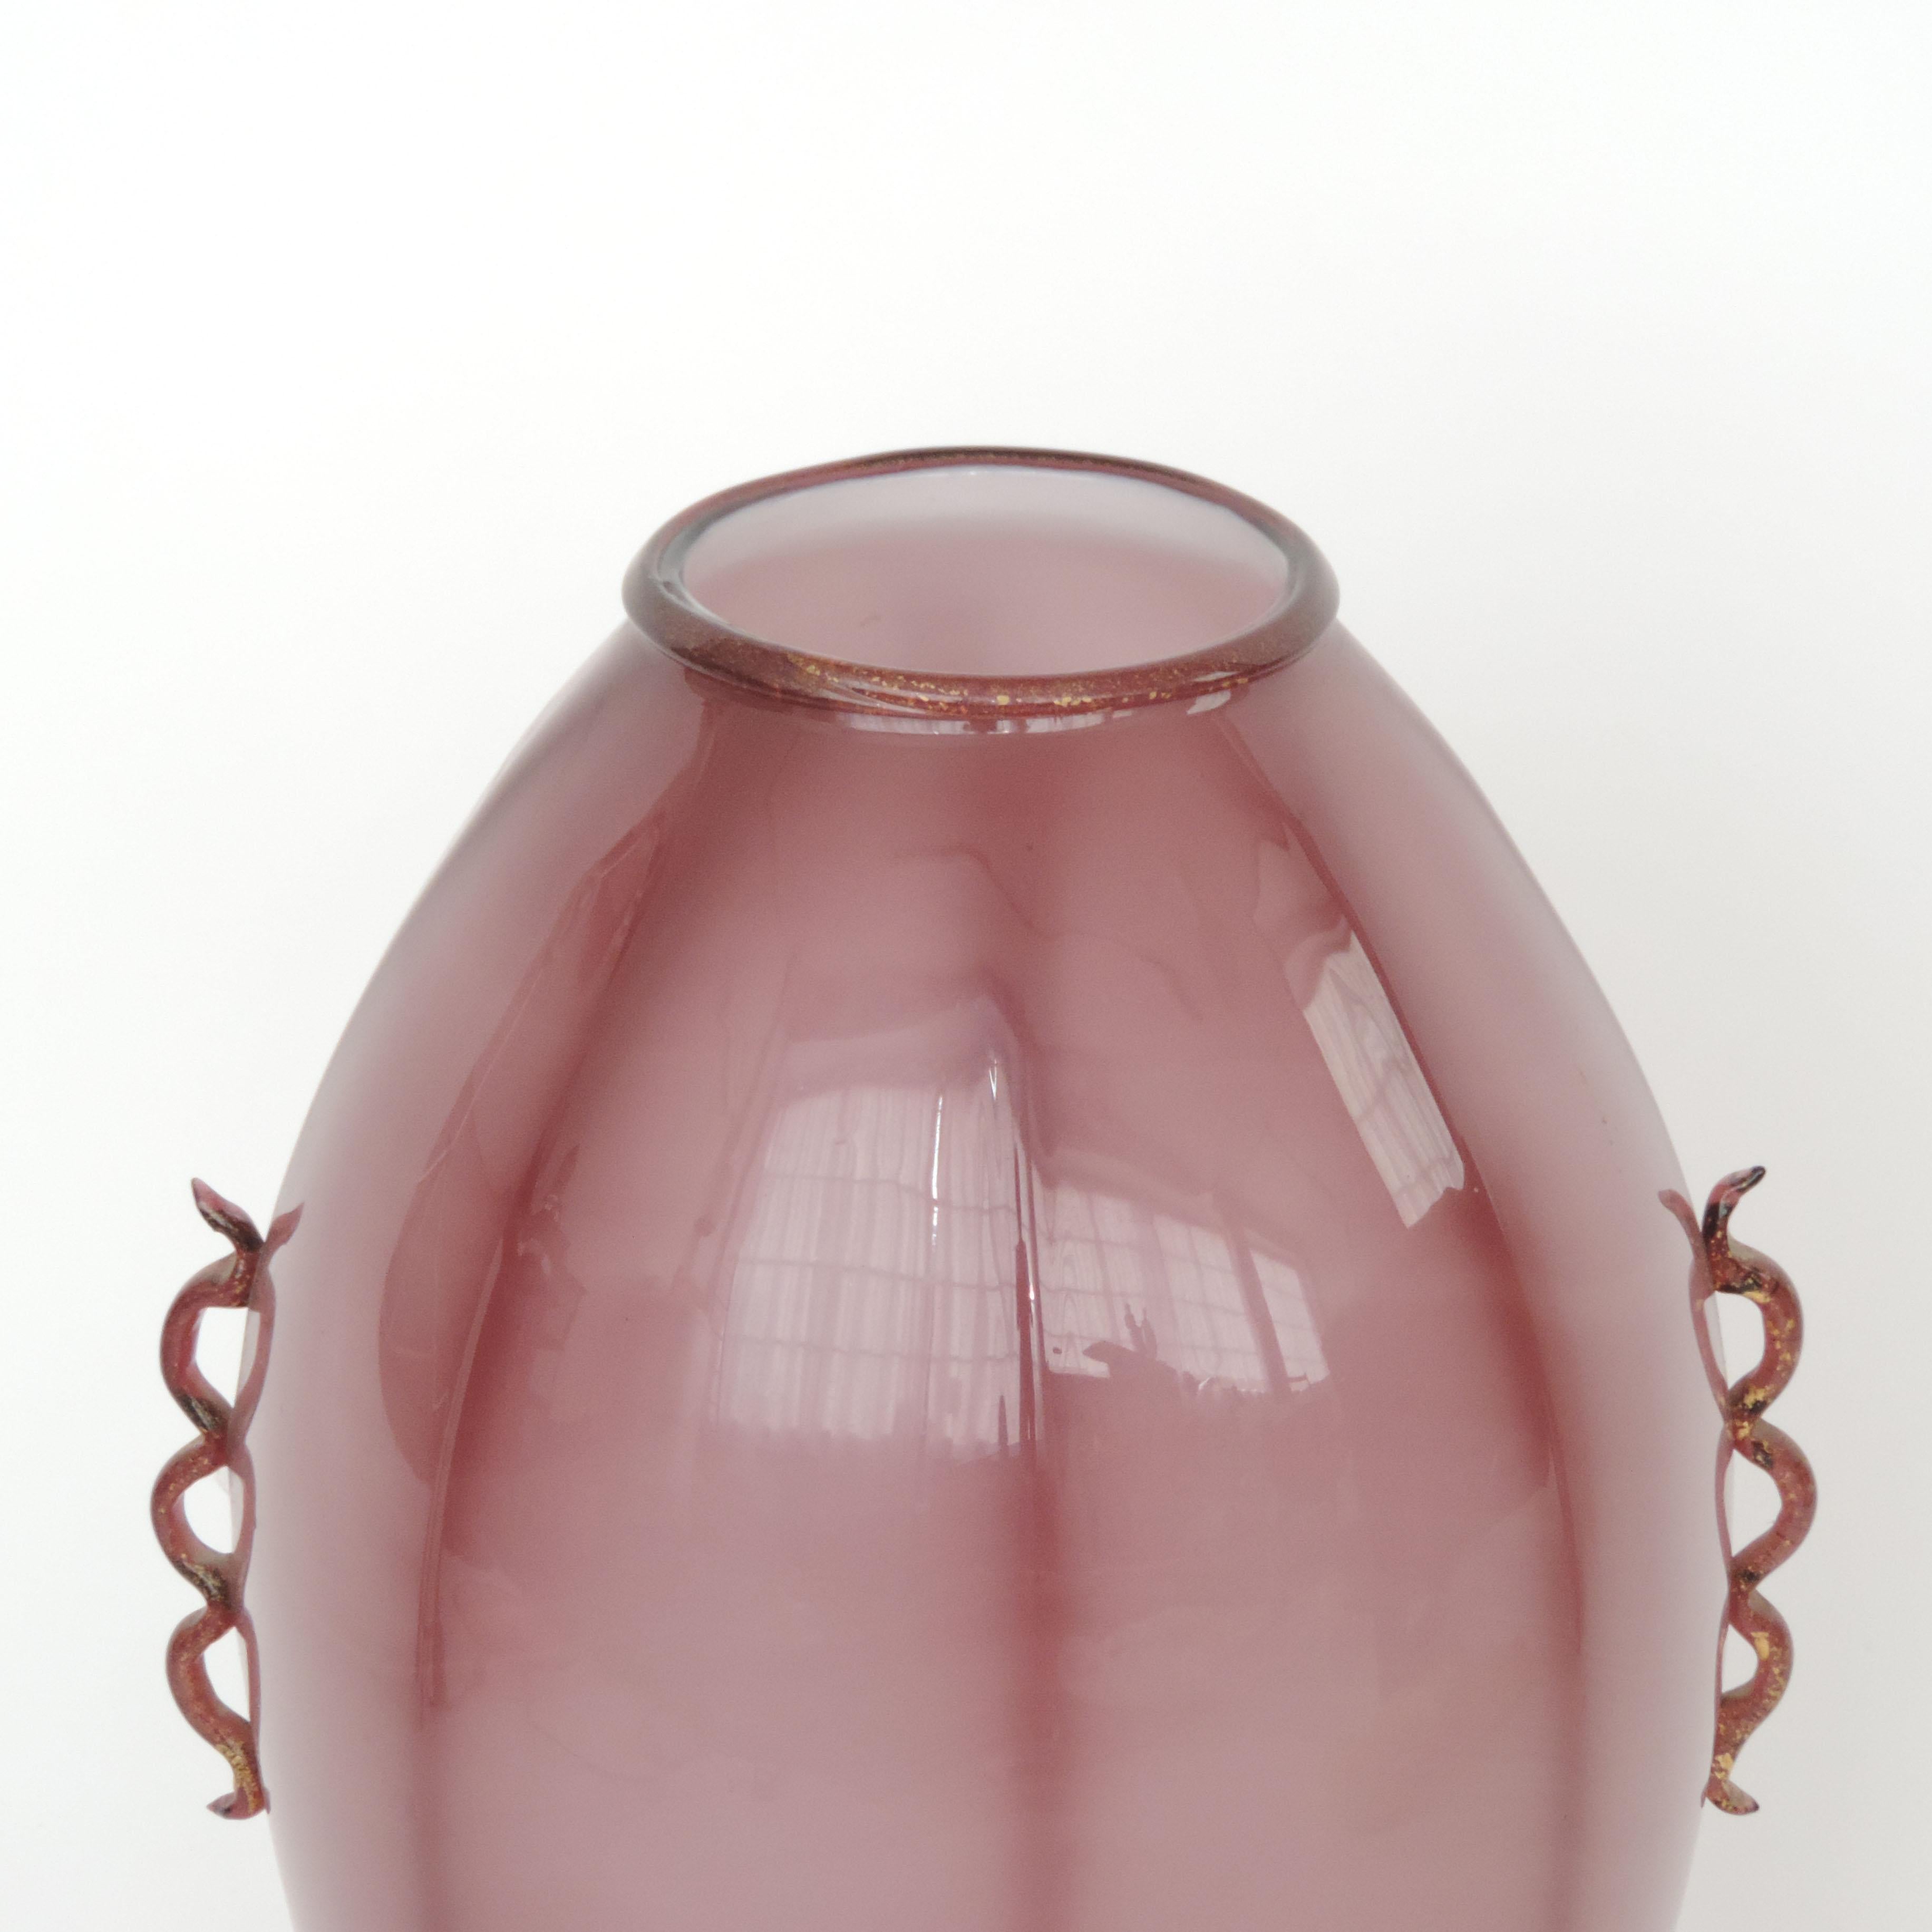 Grand vase en verre de Murano violet des années 1930 attribué à Vittorio Zecchin.